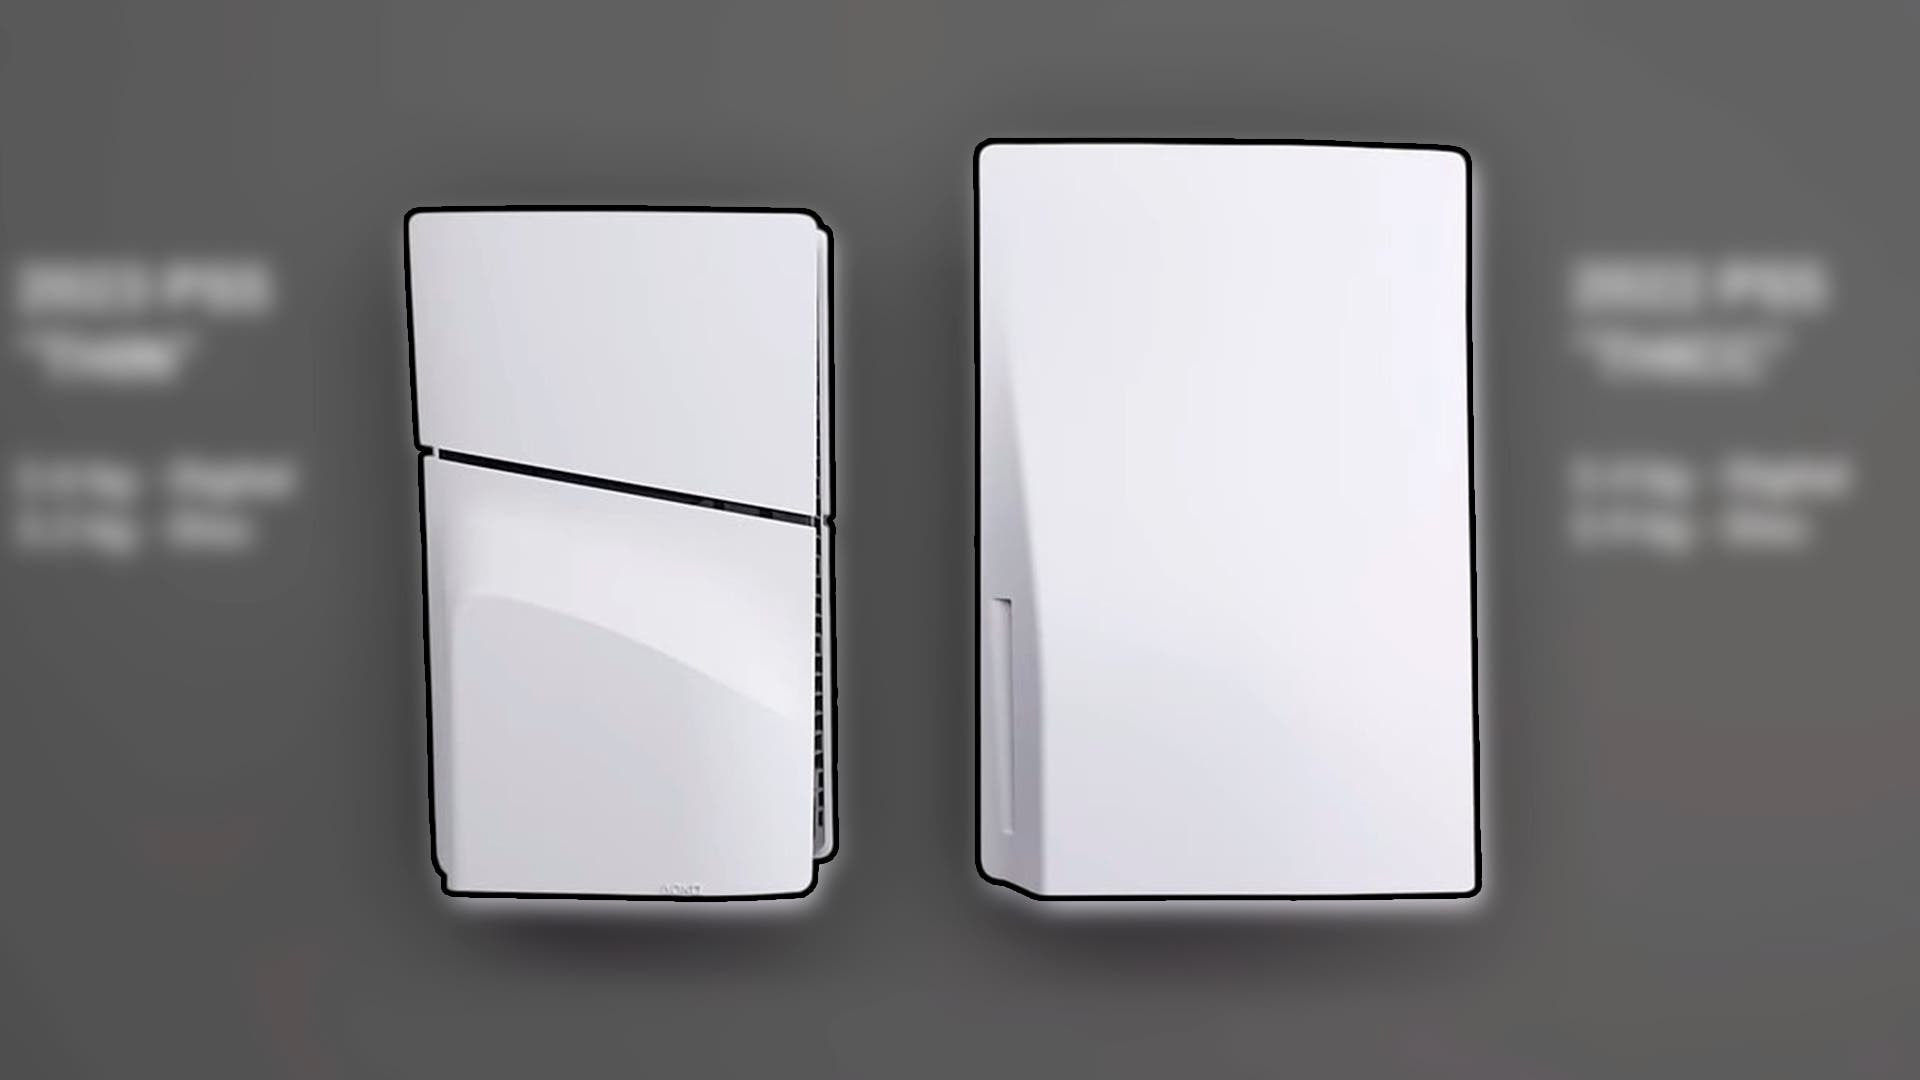 PS5 Slim es mucho más pequeña? Este vídeo compara ambas consolas